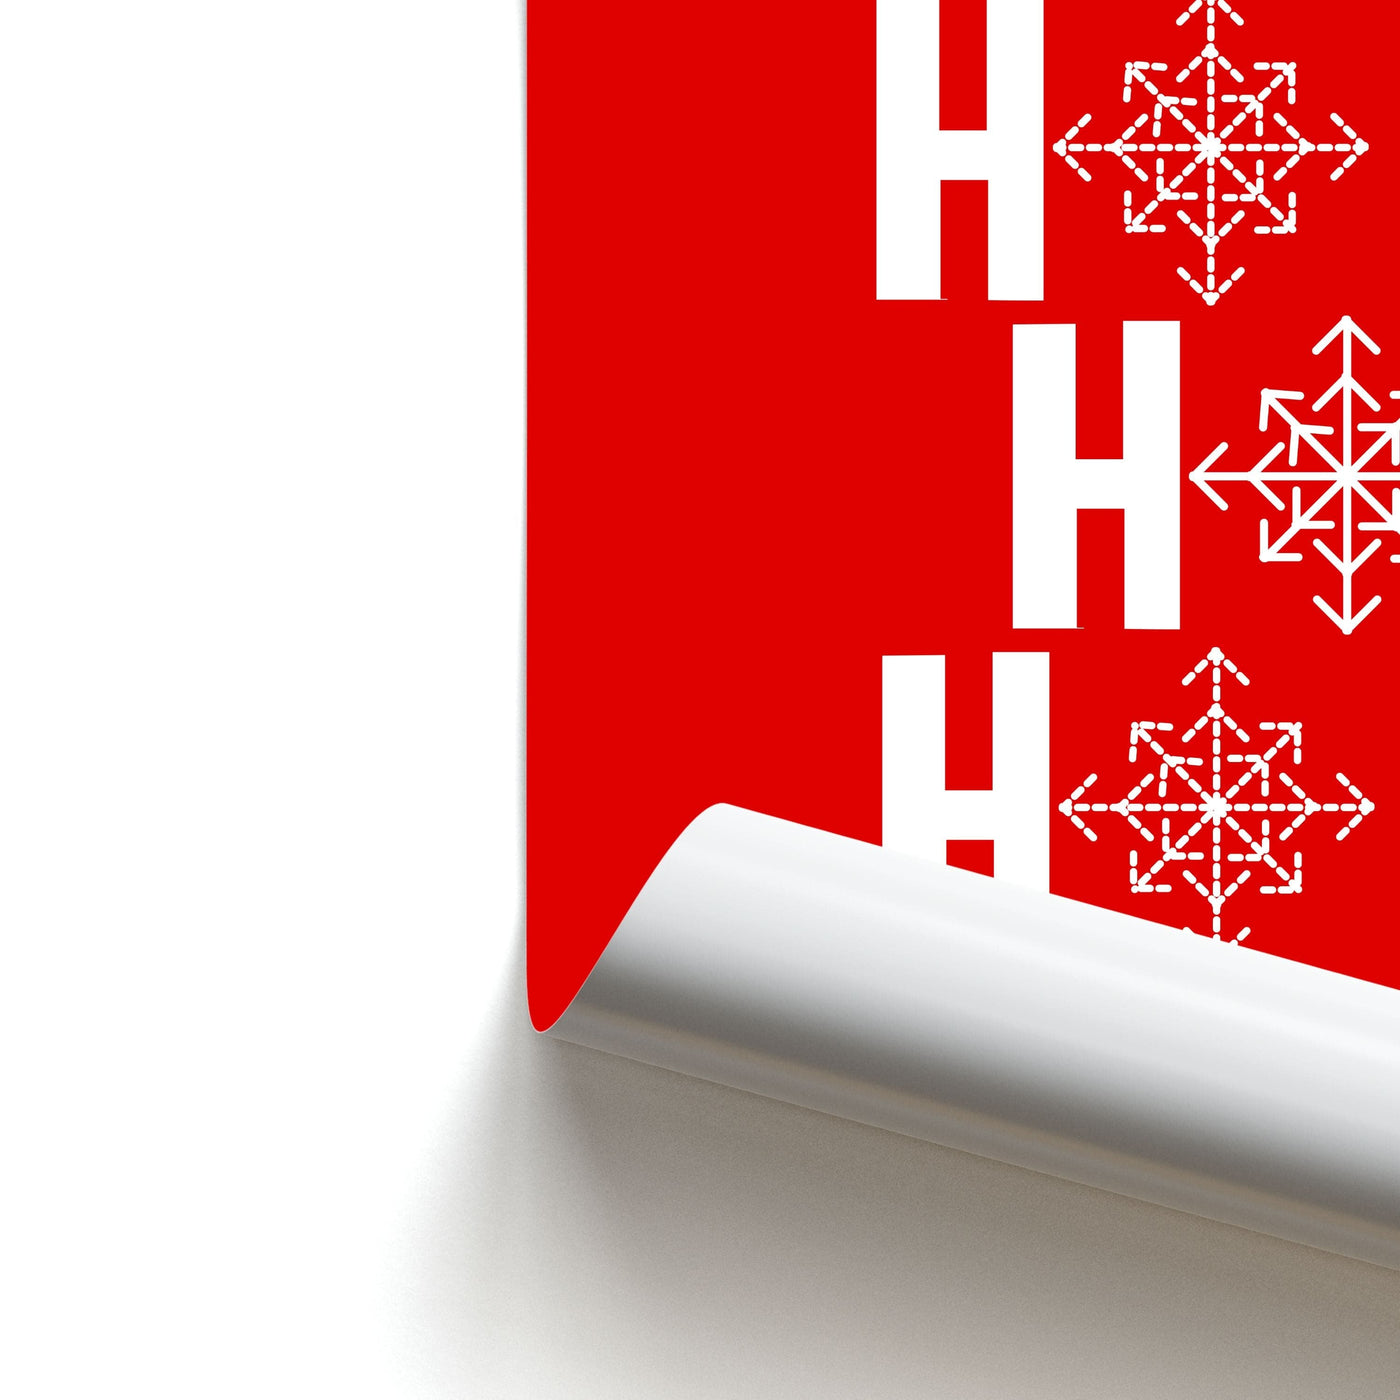 HO HO HO - Christmas Patterns Poster